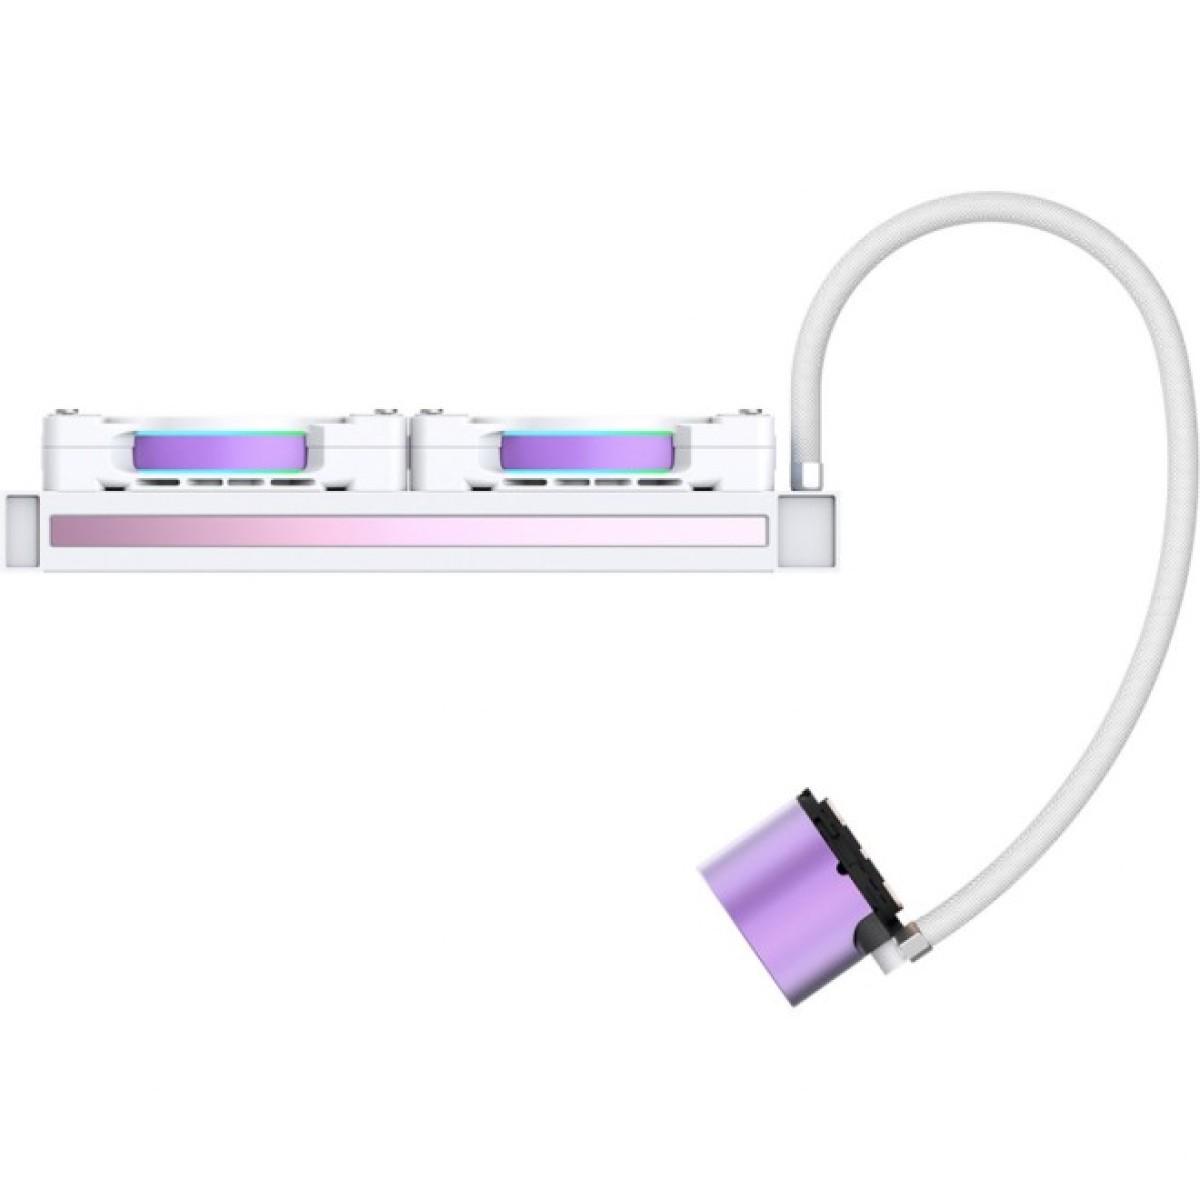 Система водяного охлаждения ID-Cooling Pinkflow 240 Diamond Purple 98_98.jpg - фото 5